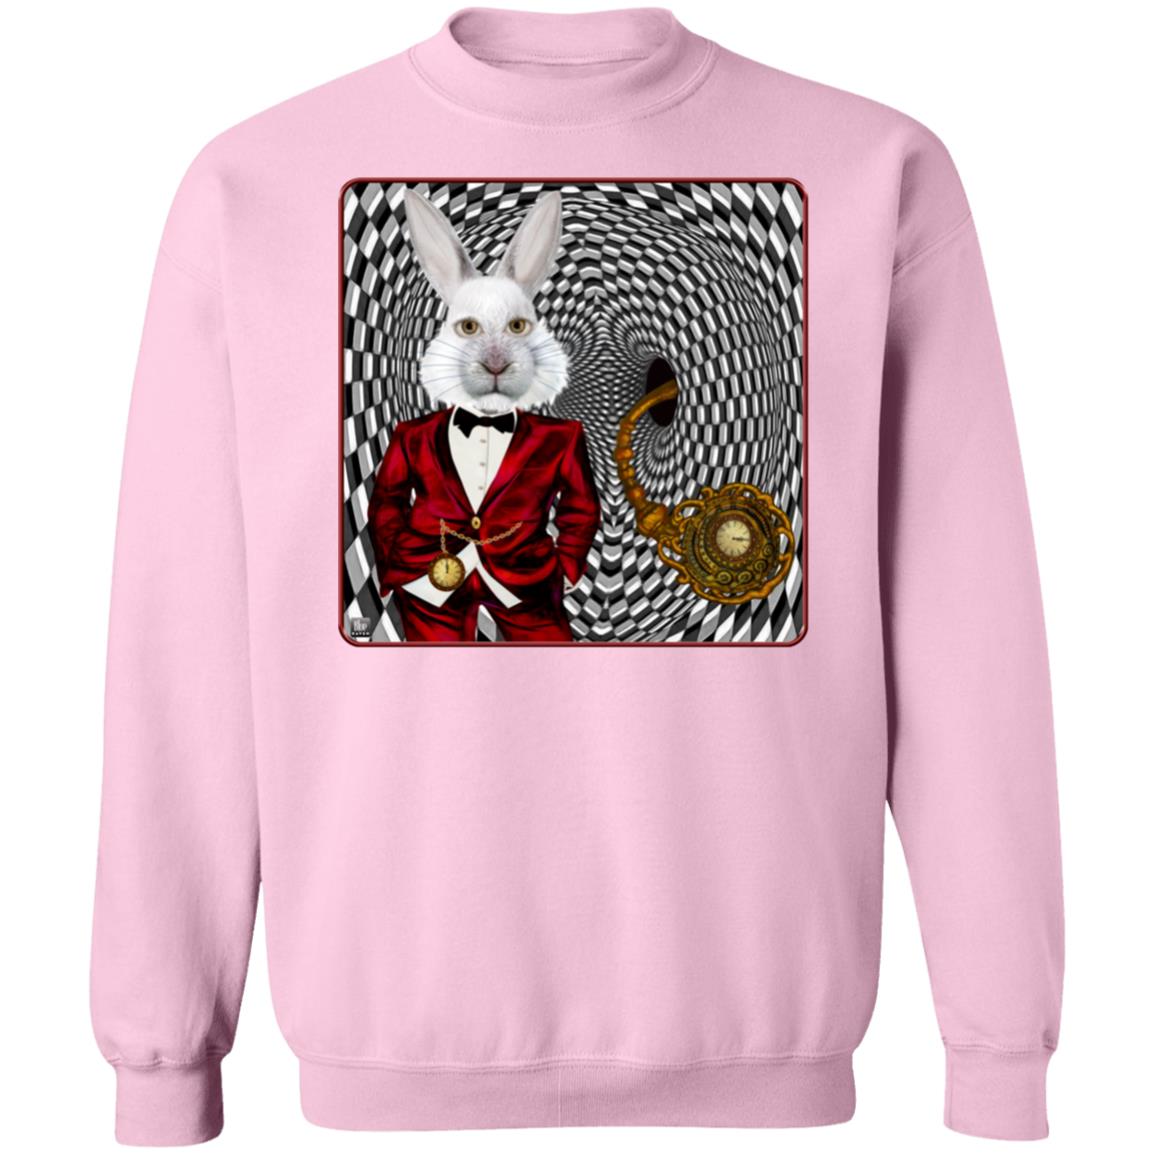 Portrait Of The White Rabbit - Unisex Crew Neck Sweatshirt